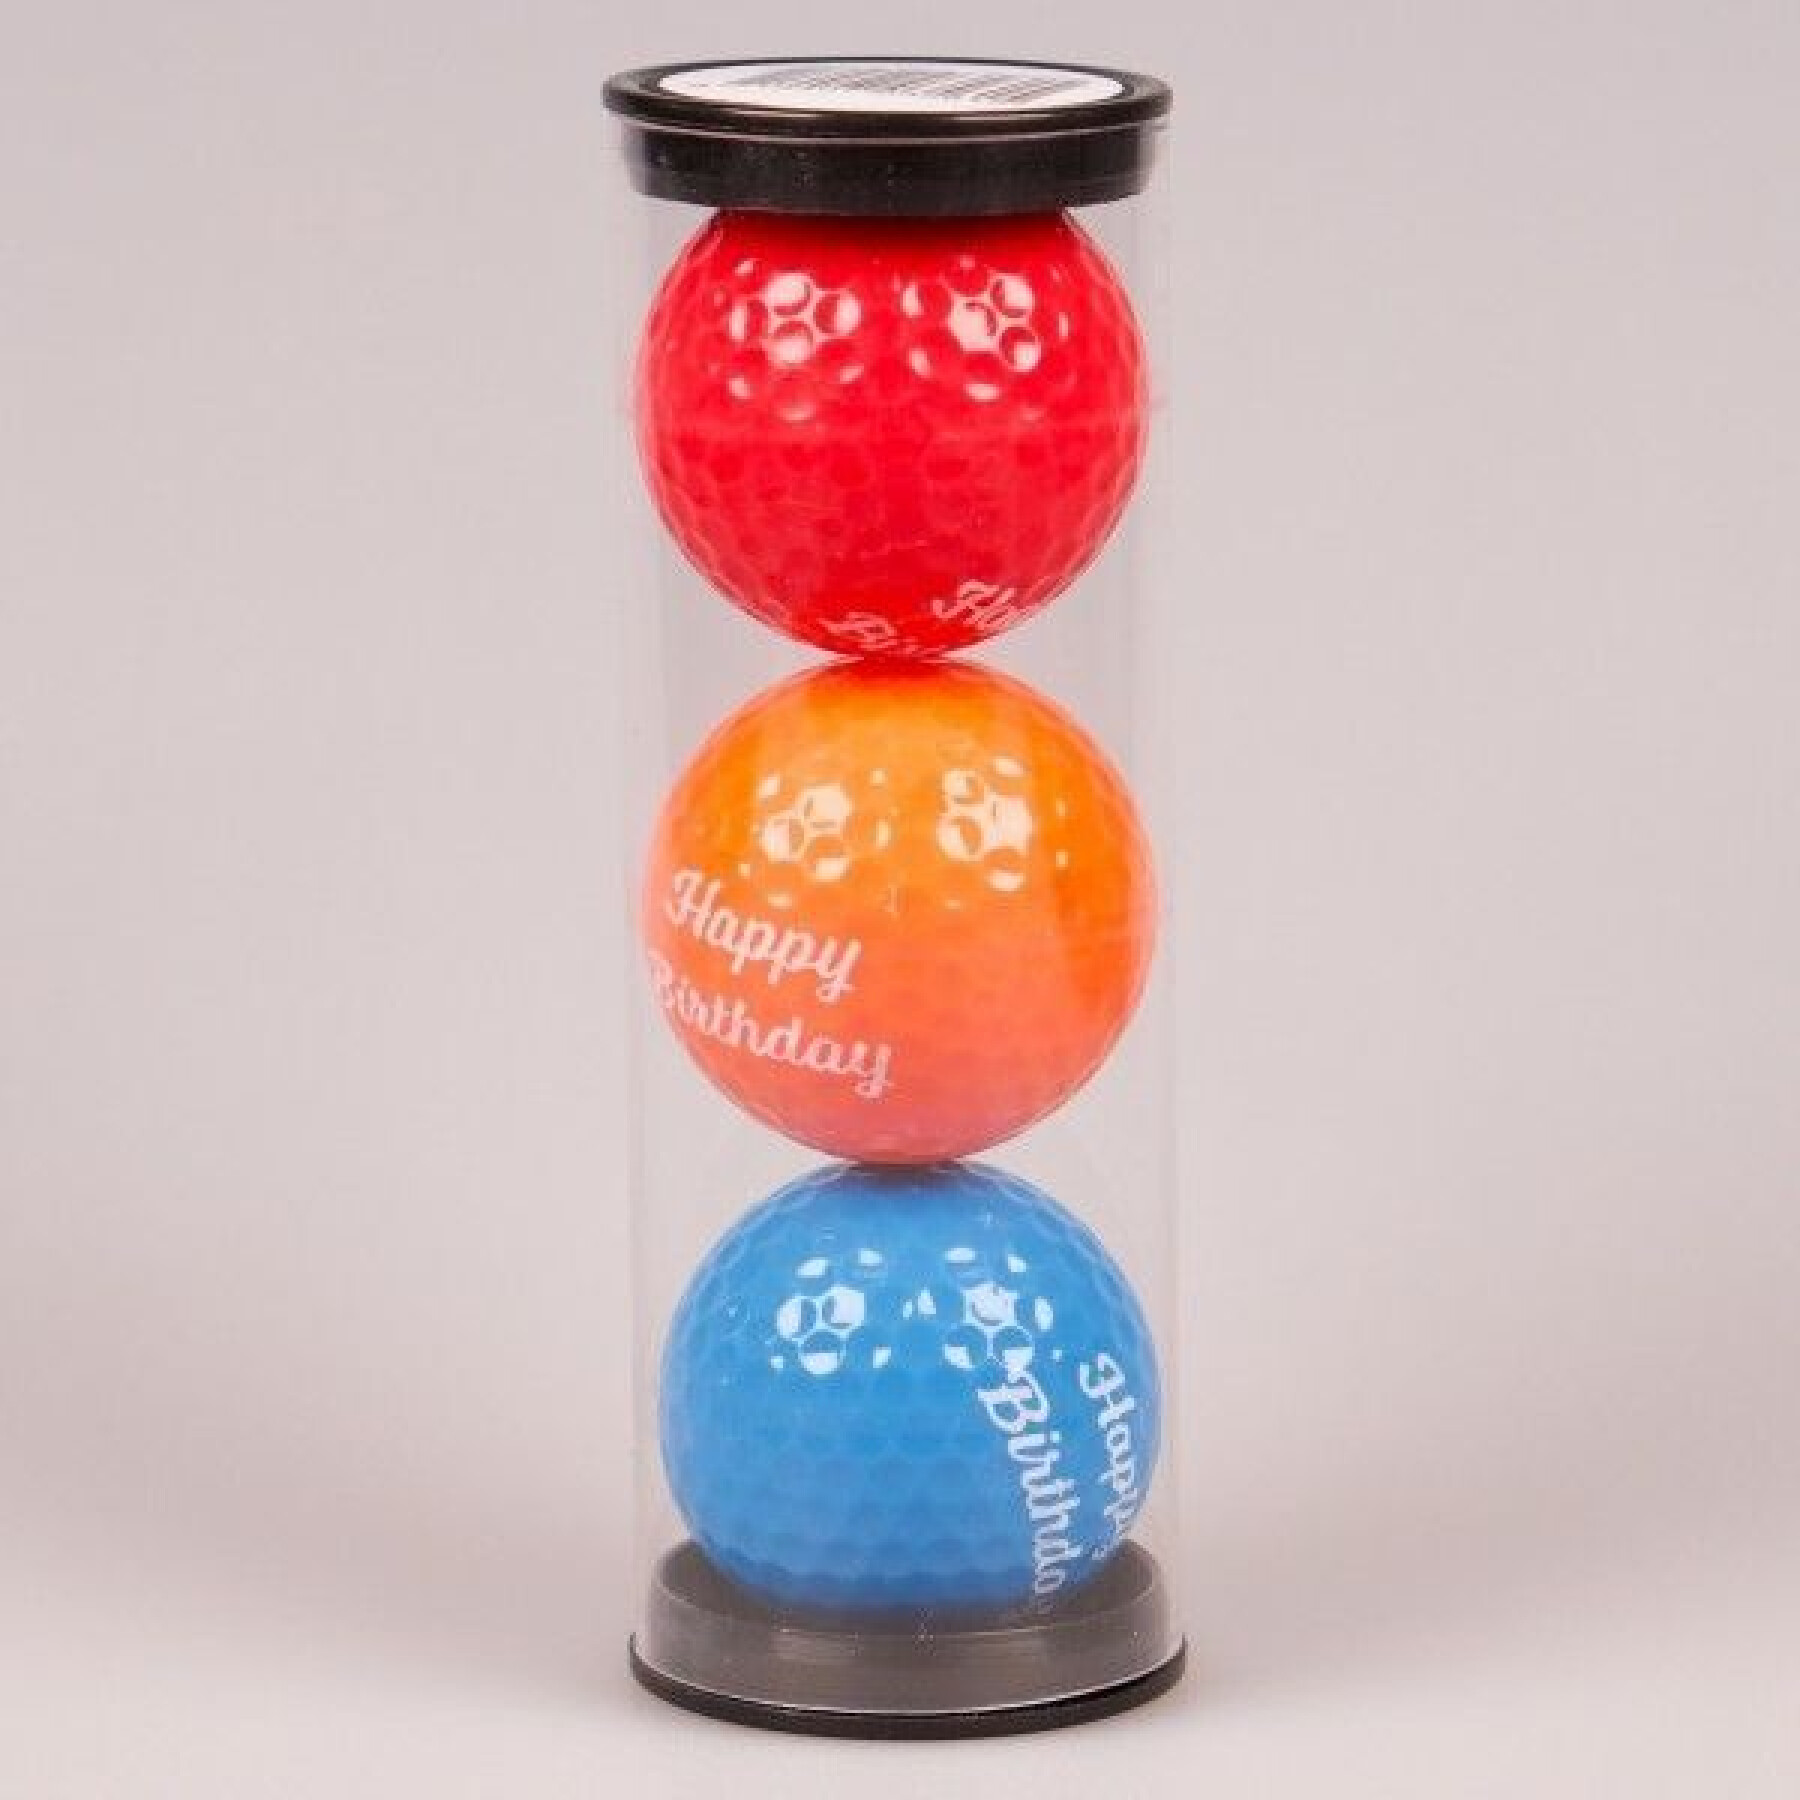 Lot de 3 balles de golf fantaisie imprimé happy birthday Legend